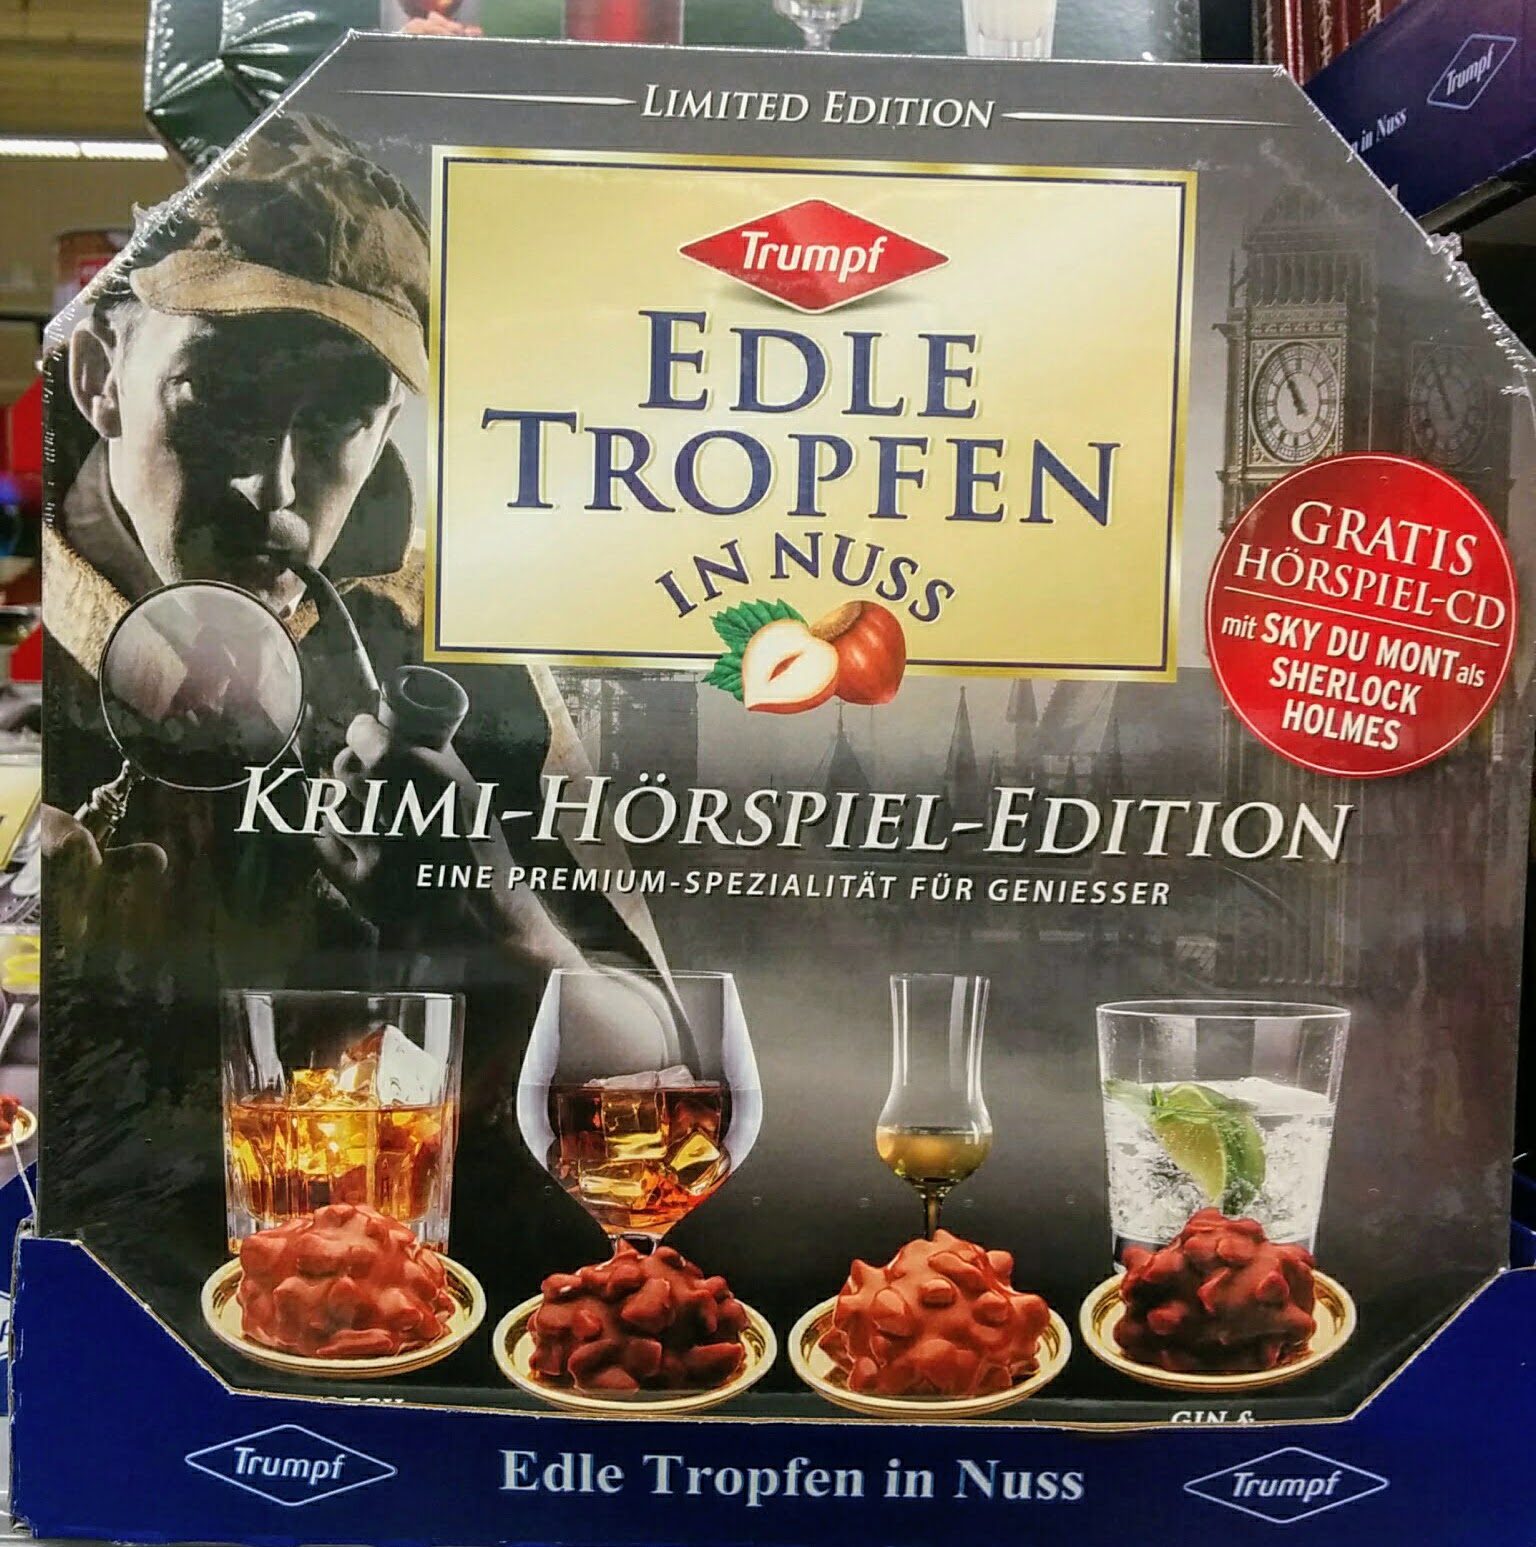 Edle Tropfen in Nuss - Krimi-Hörspiel-Edition